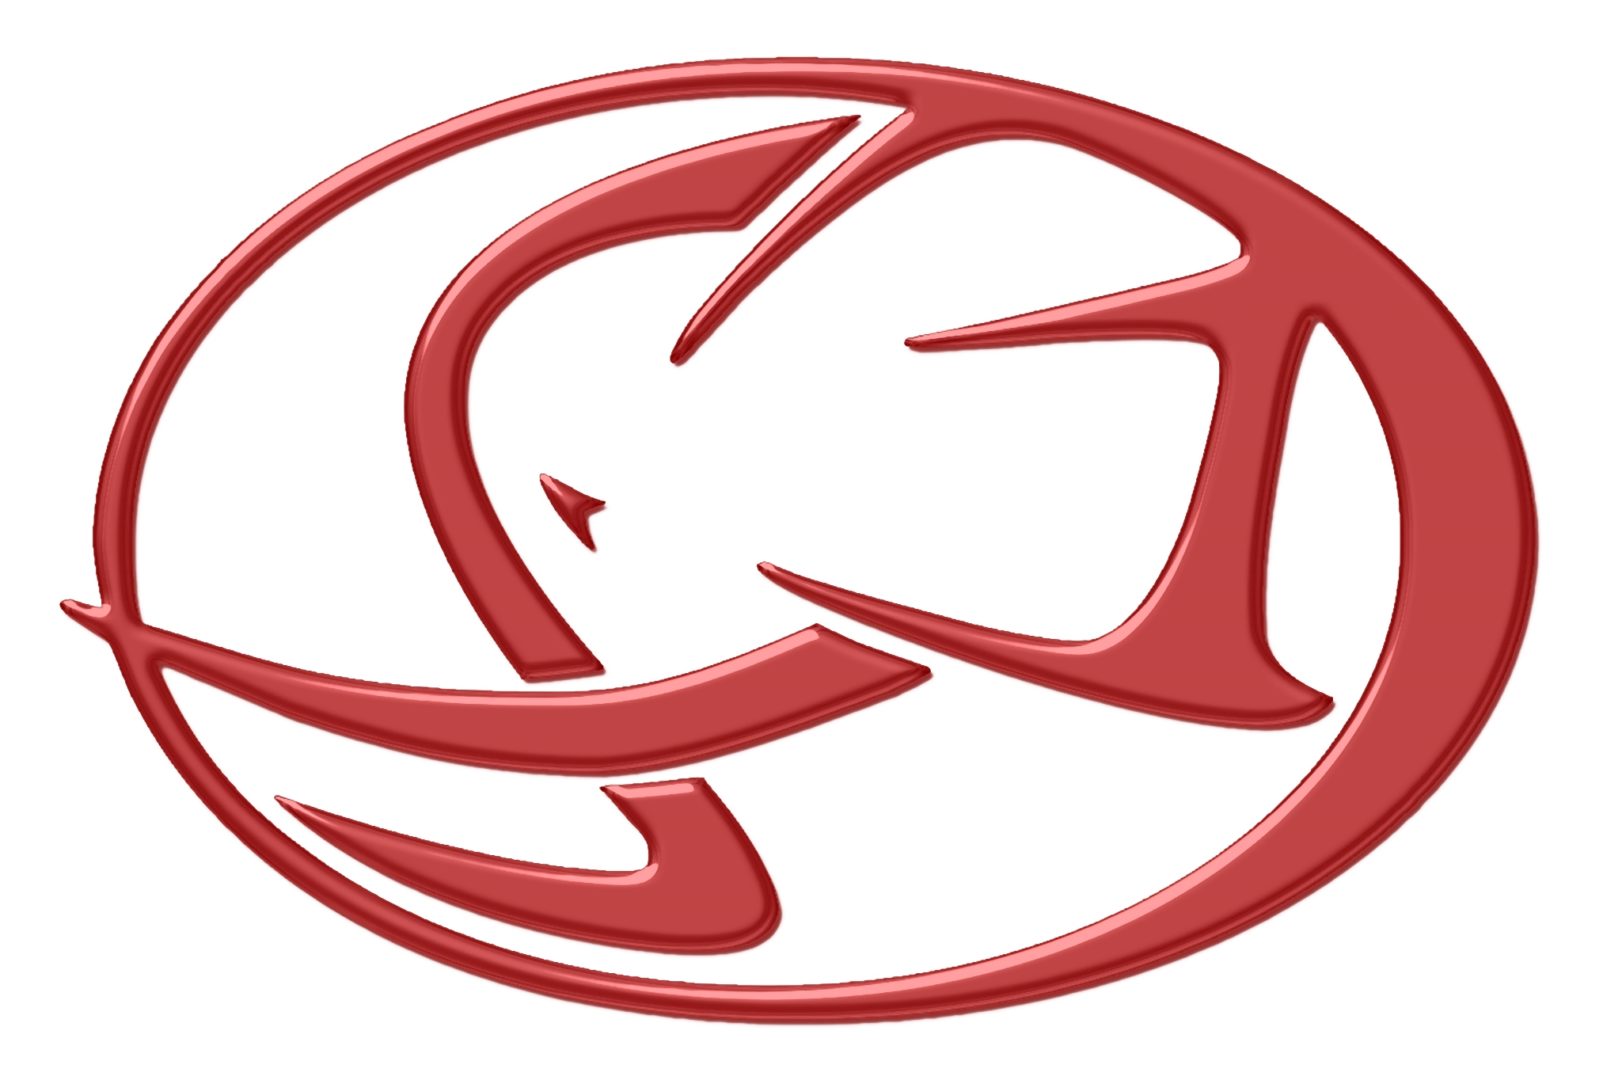 Cagiva logo 2000